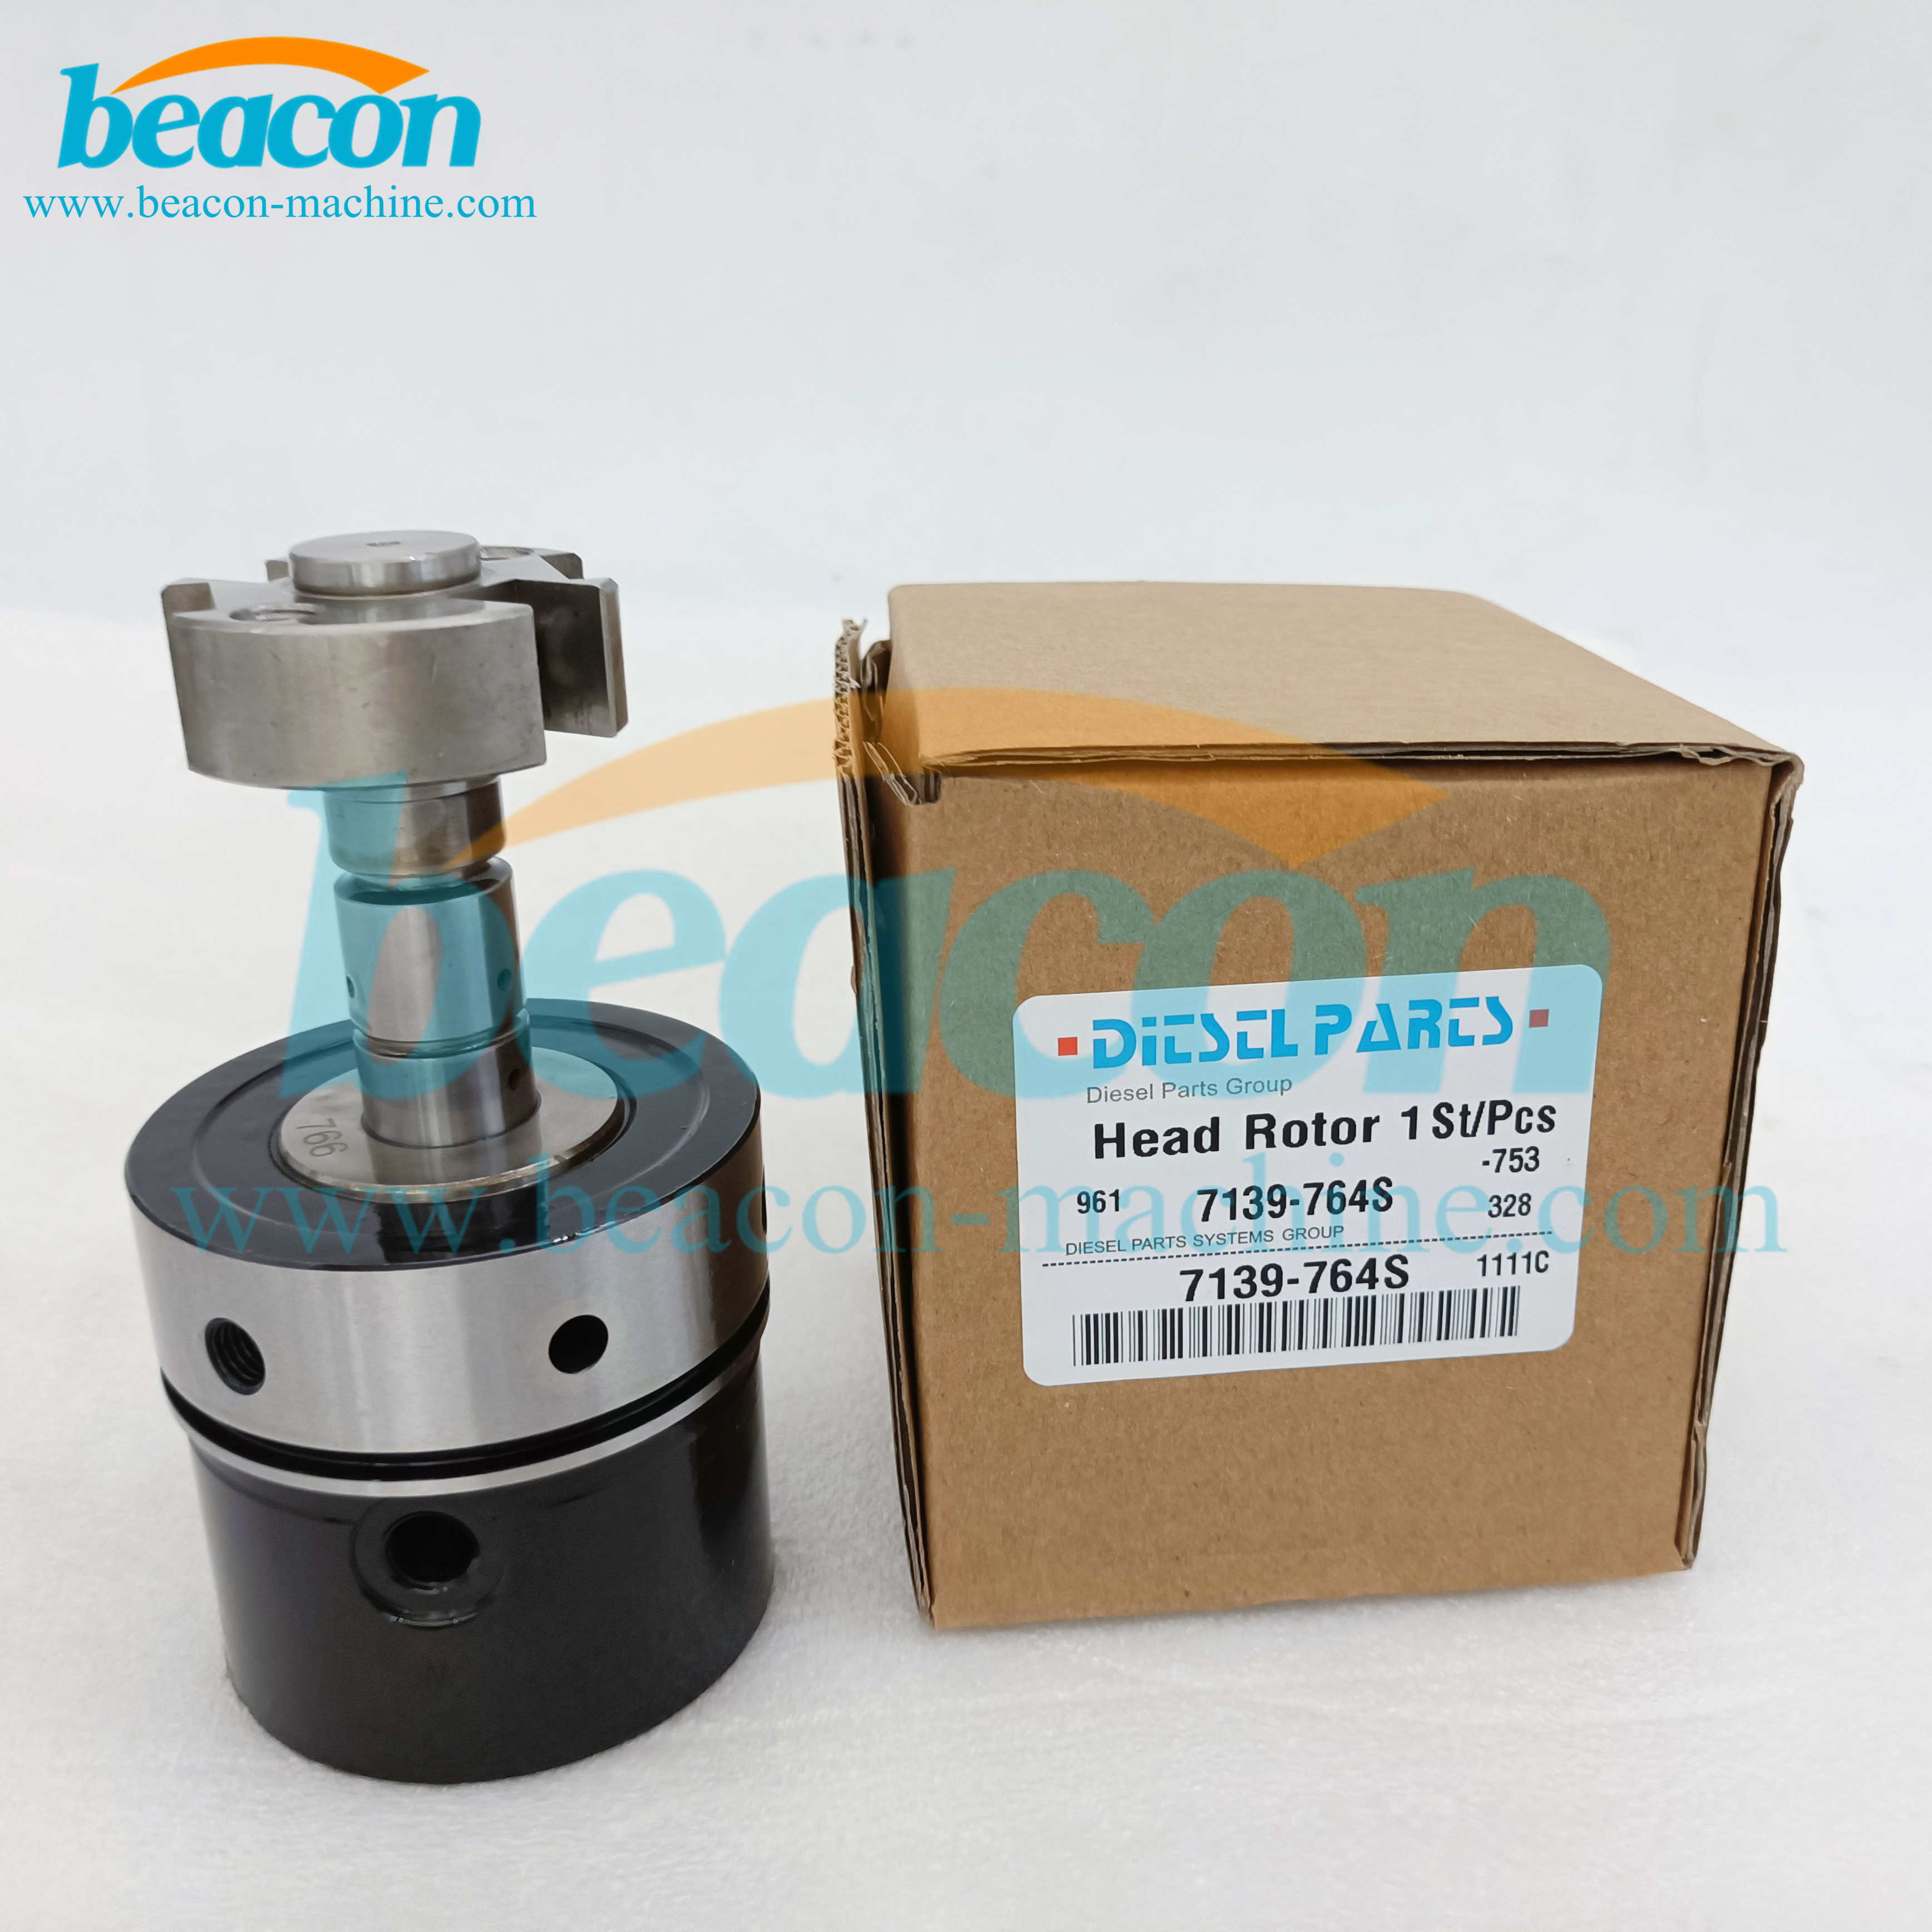 7139-764S Diesel fuel rotor head OEM Package High Quality Beacon Machine diesel injection head rotor